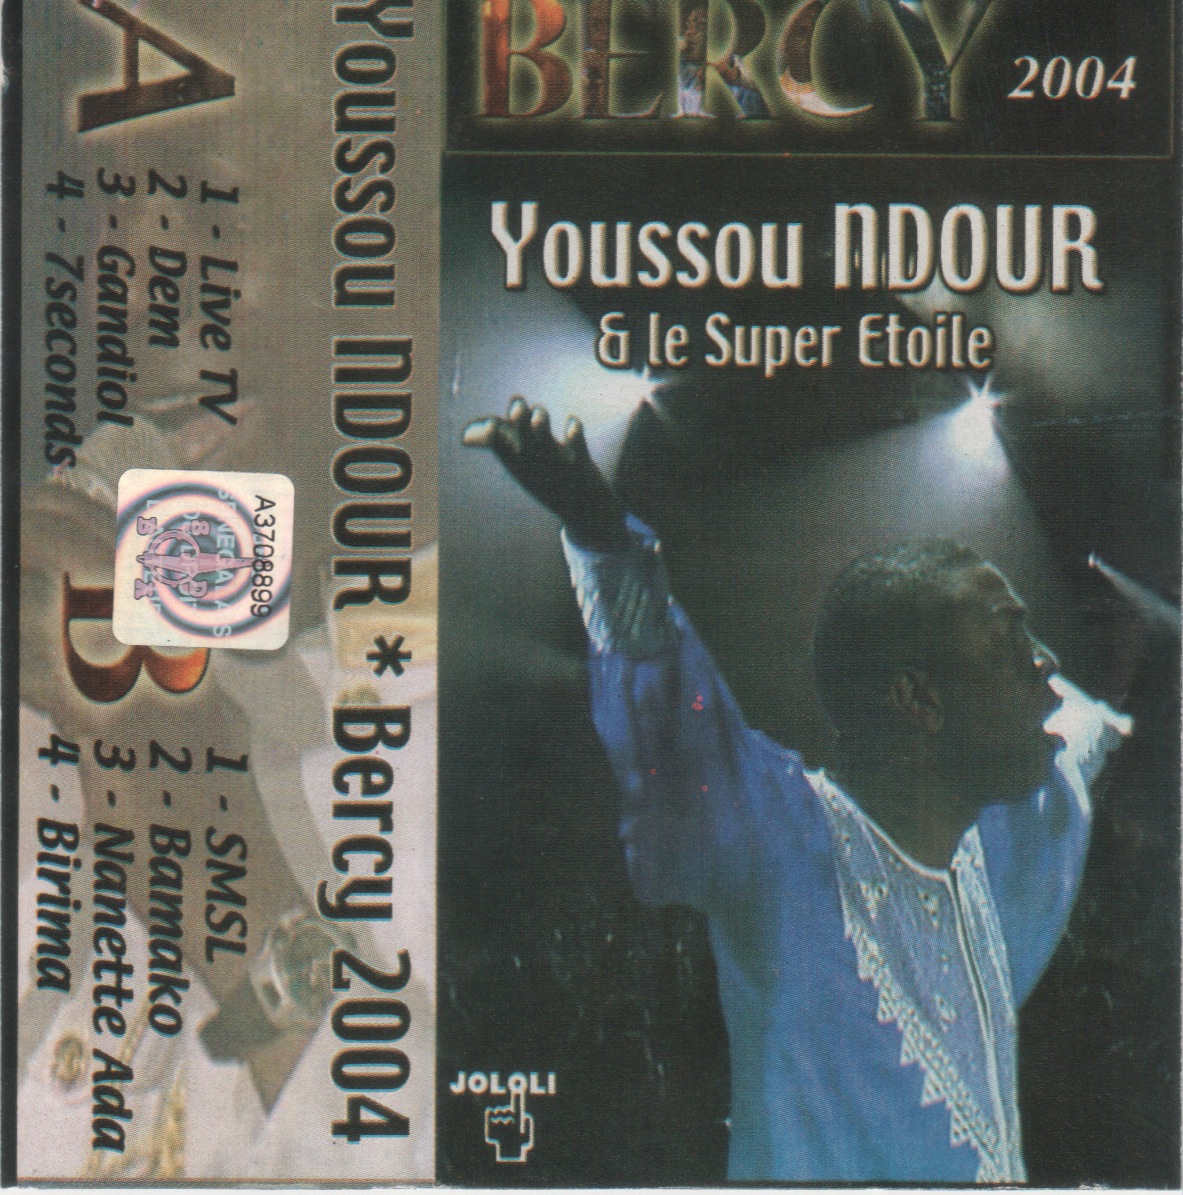 Youssou Ndour & Le Super Etoile - Bercy 2004 Cover+1